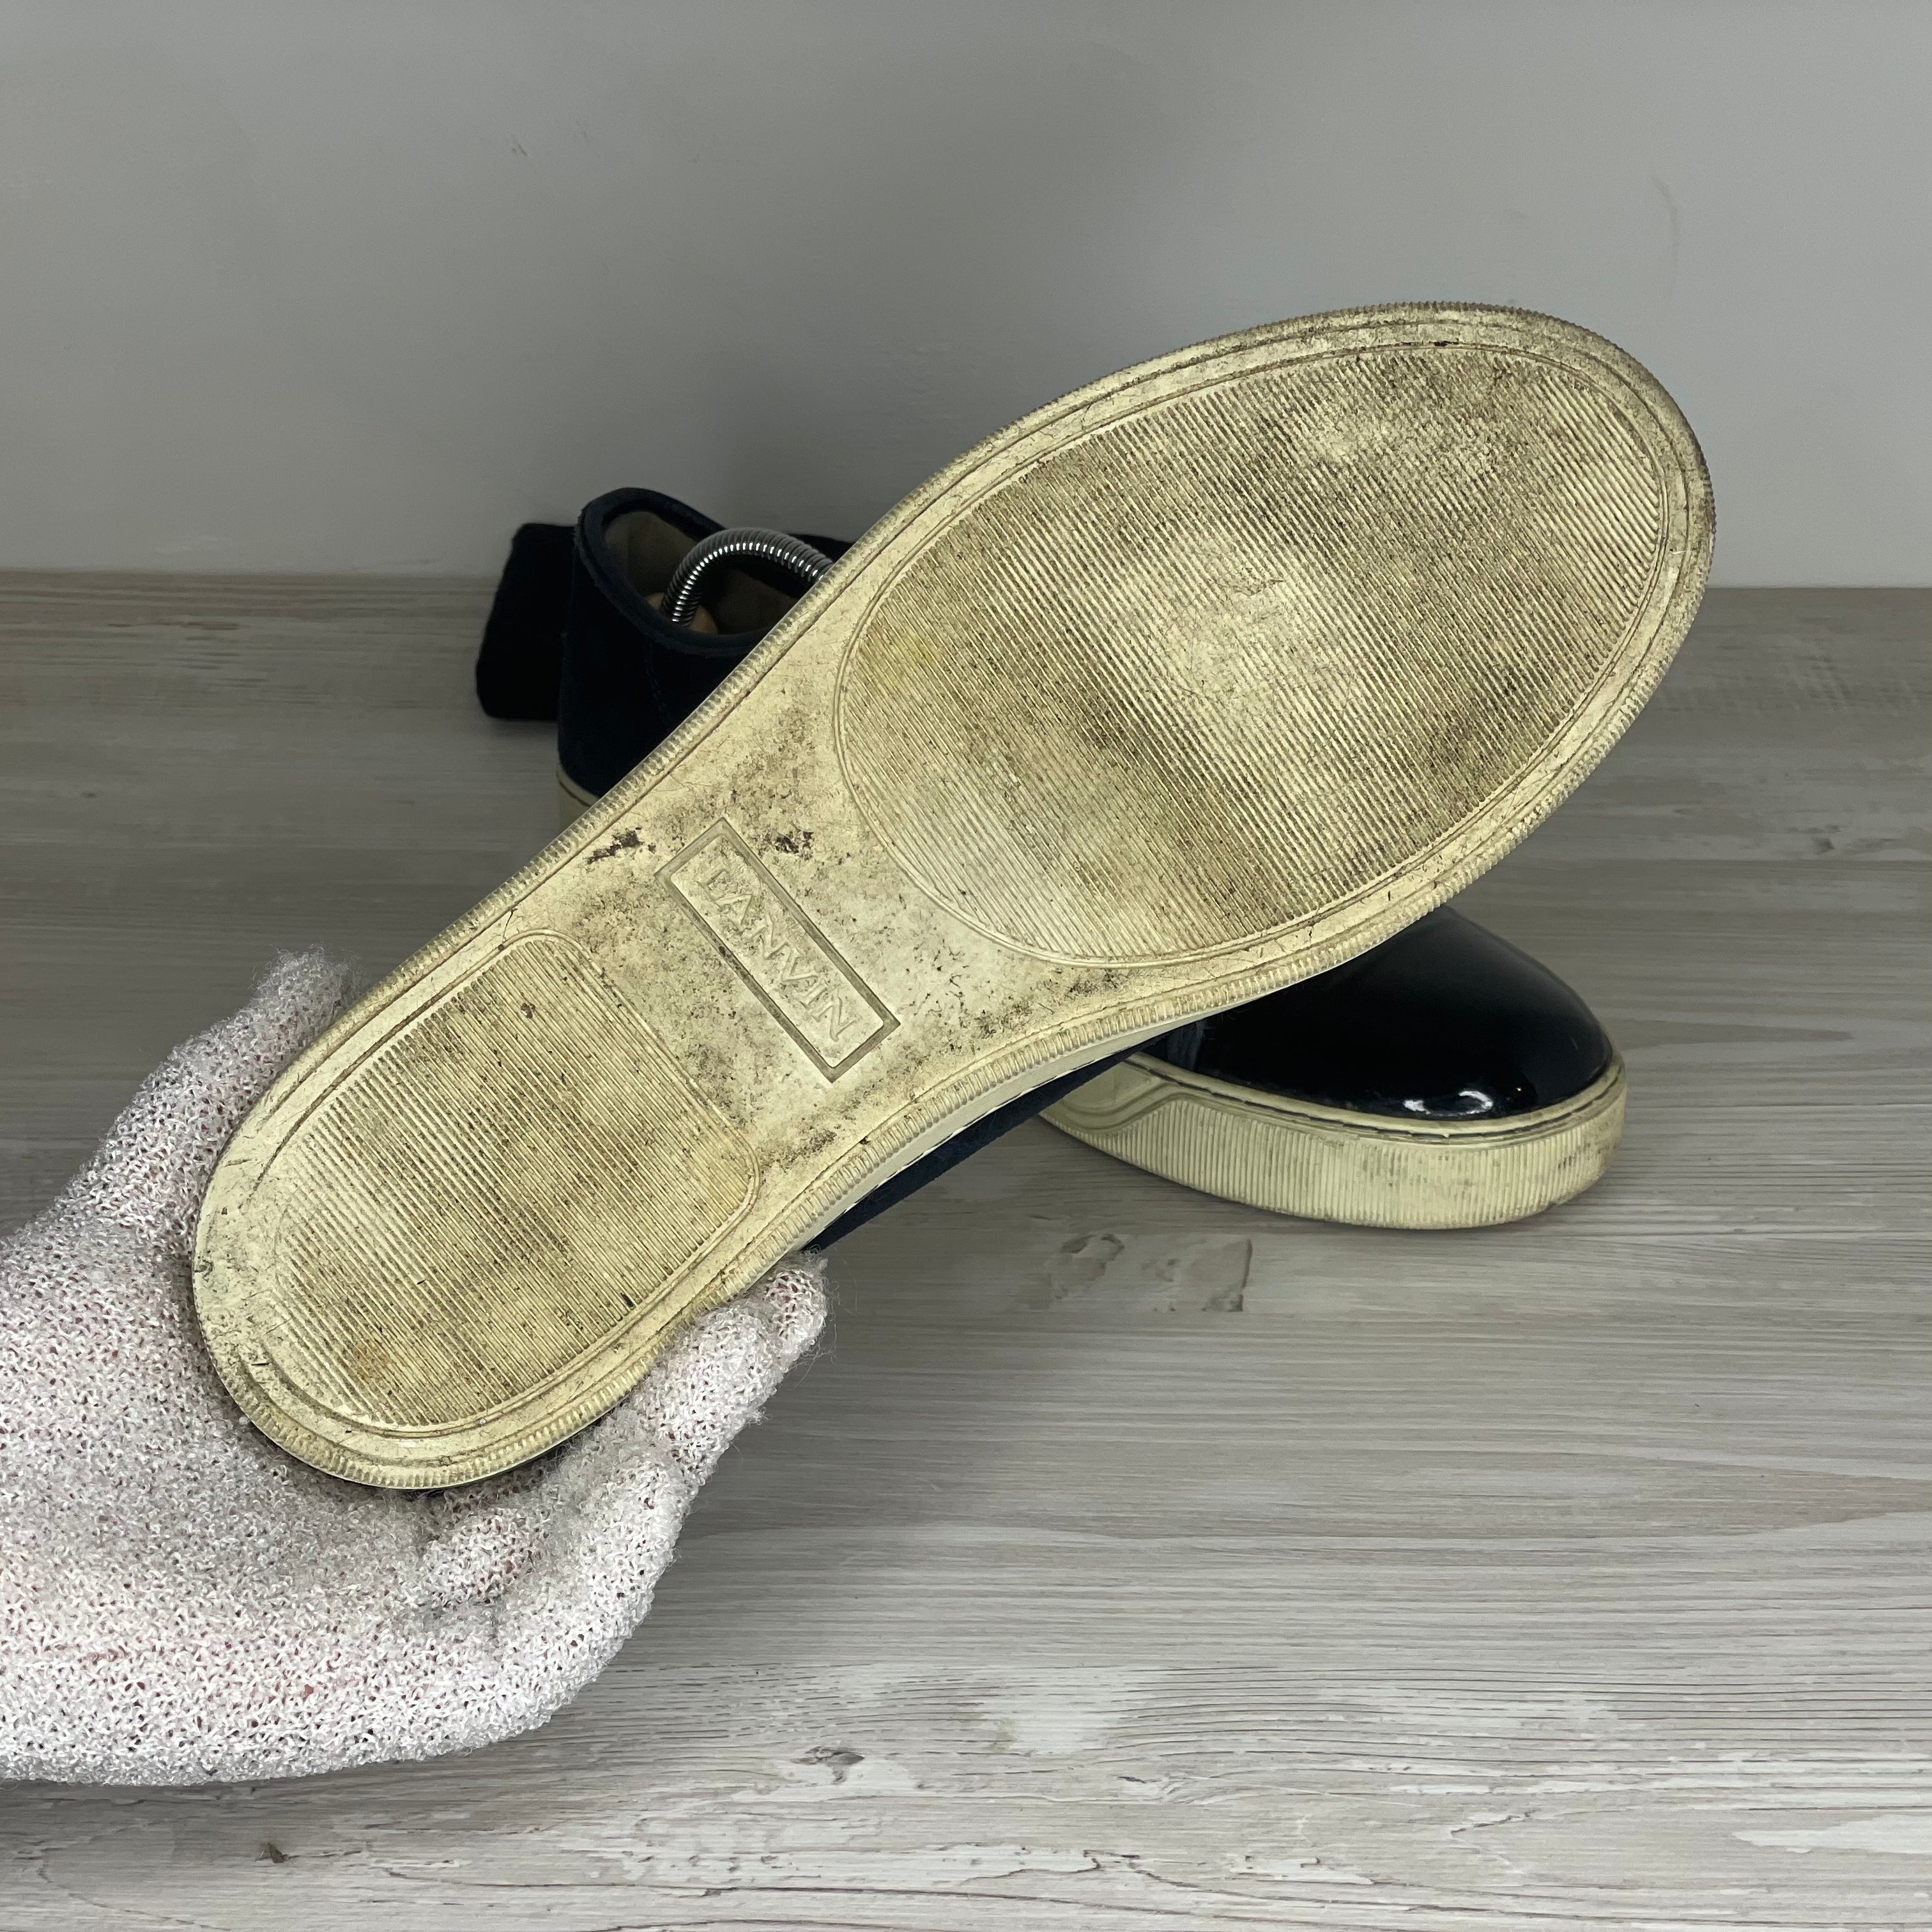 Lanvin Sneakers, Herre 'Mørkeblå' Lak Toe (43) ⛑️